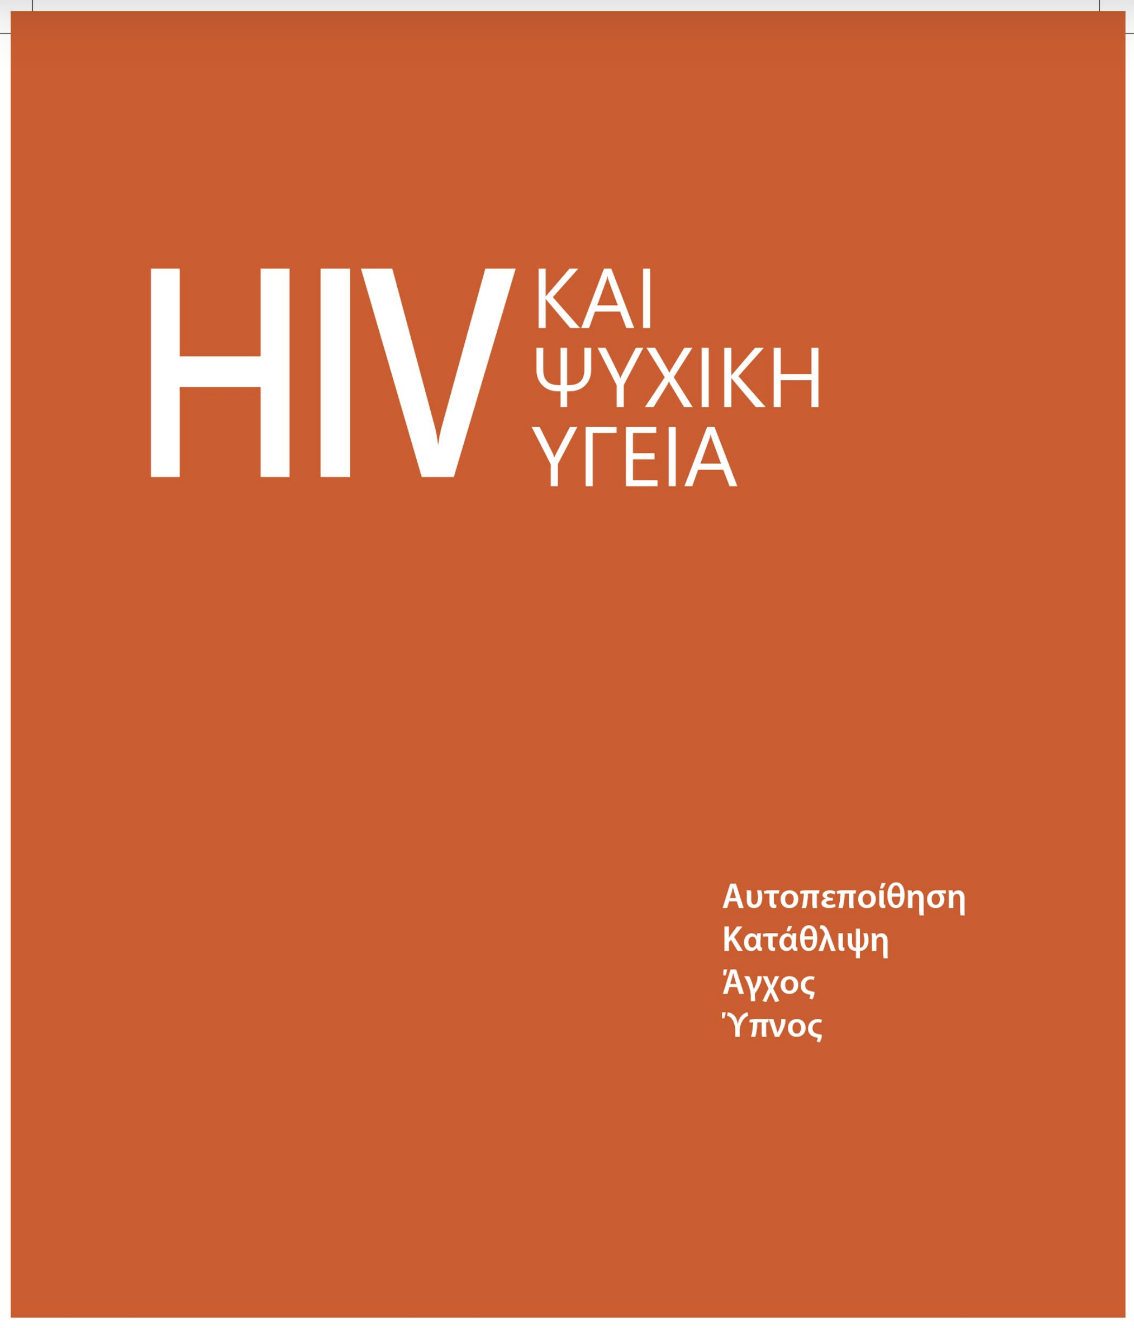 Εικόνα για το άρθρο “HIV & Ψυχική Υγεία: νέος, δωρεάν οδηγός”